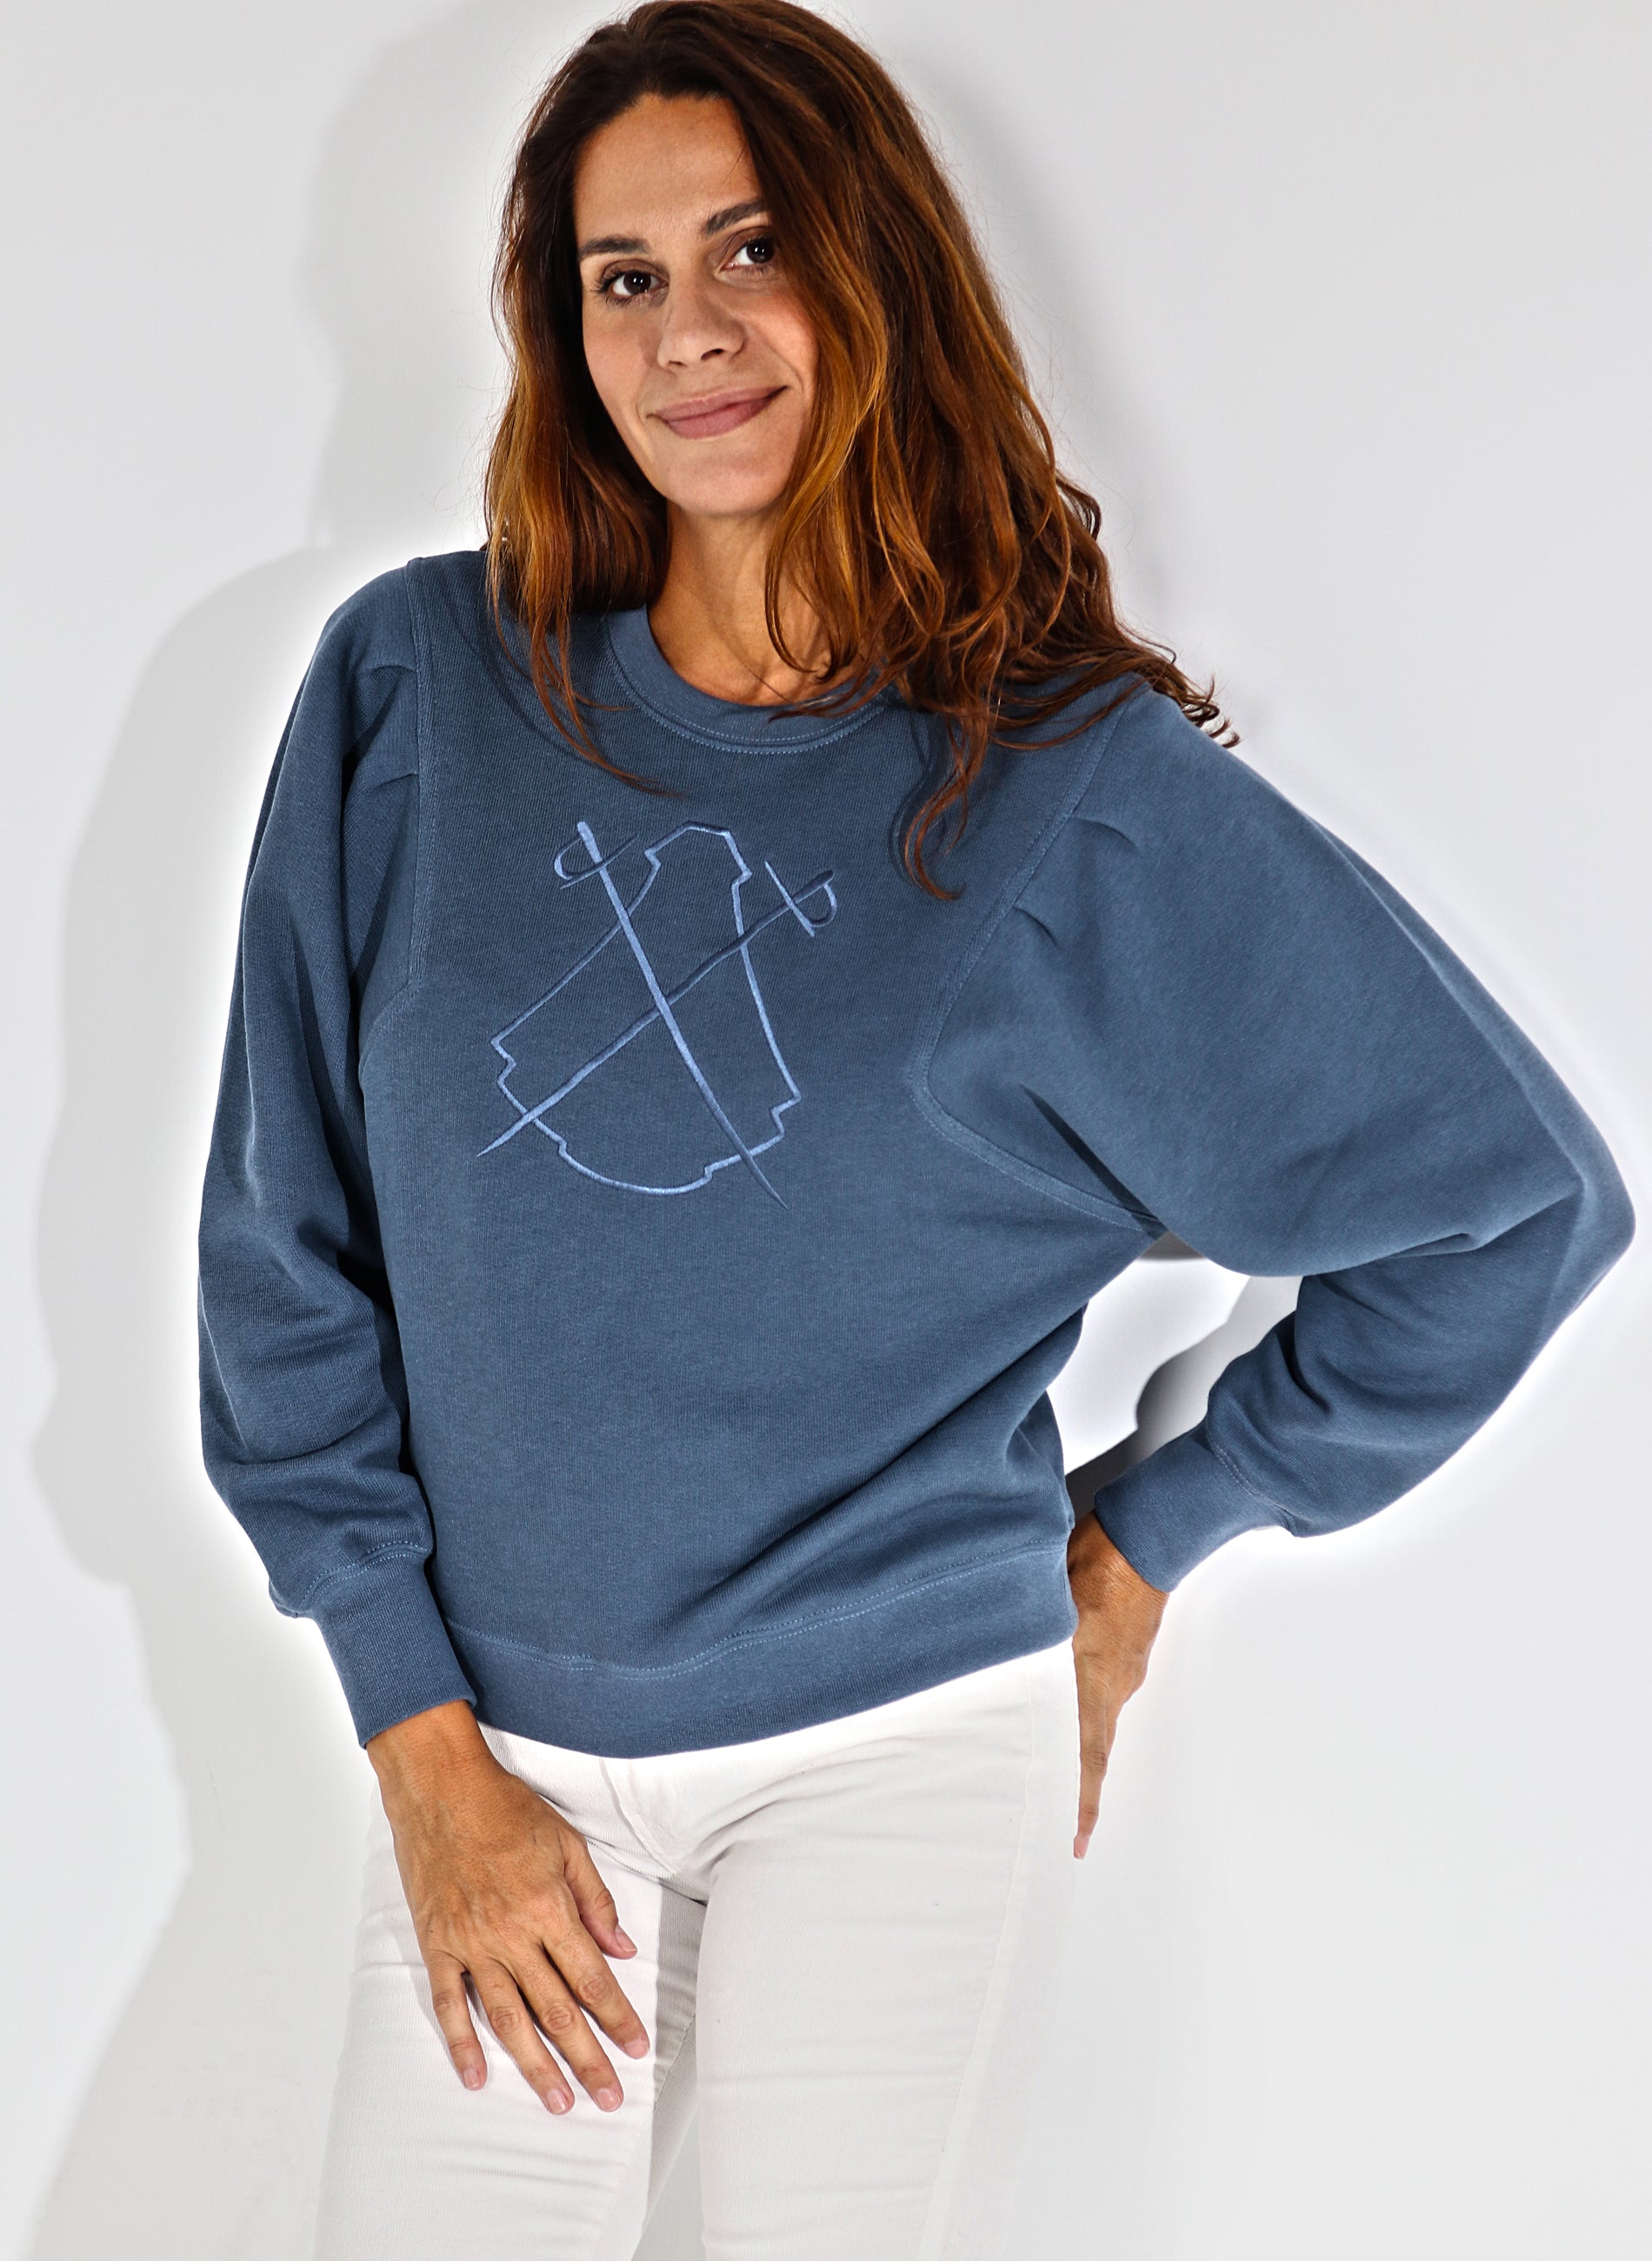 Damen-Sweatshirt Tintenblau Fantasia Sleeve